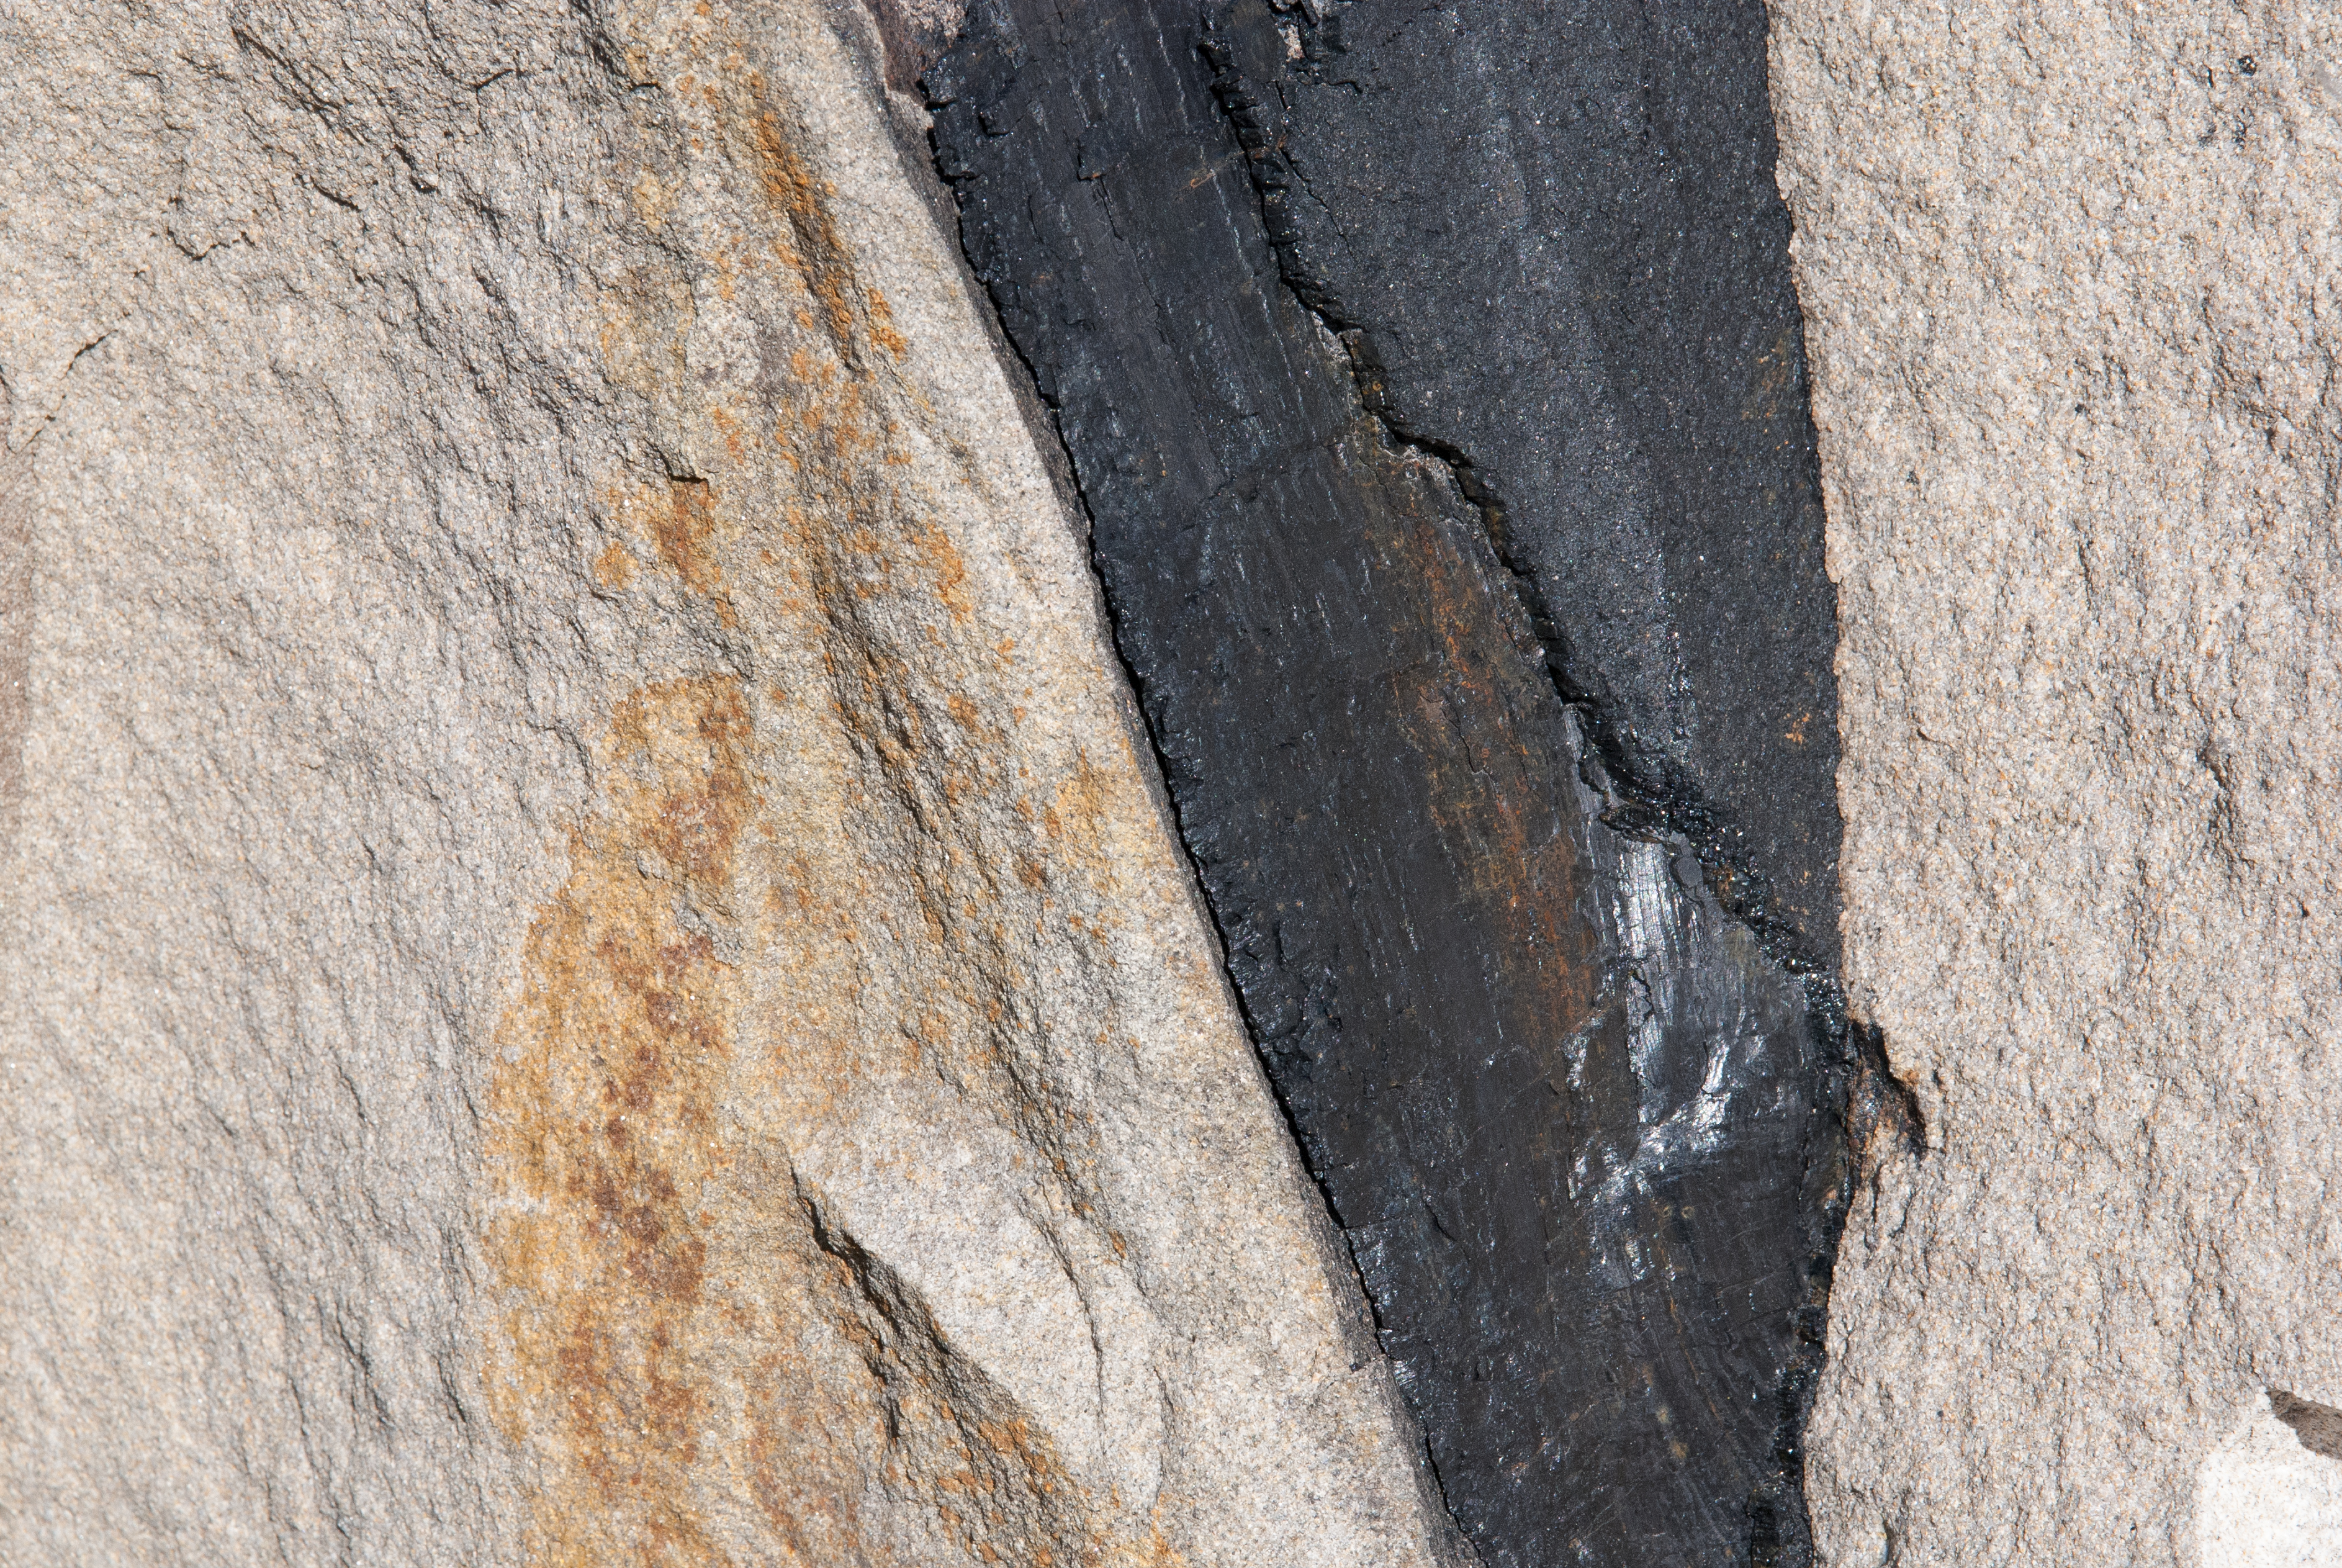 Schwarzes Fossil in hellem Sandstein